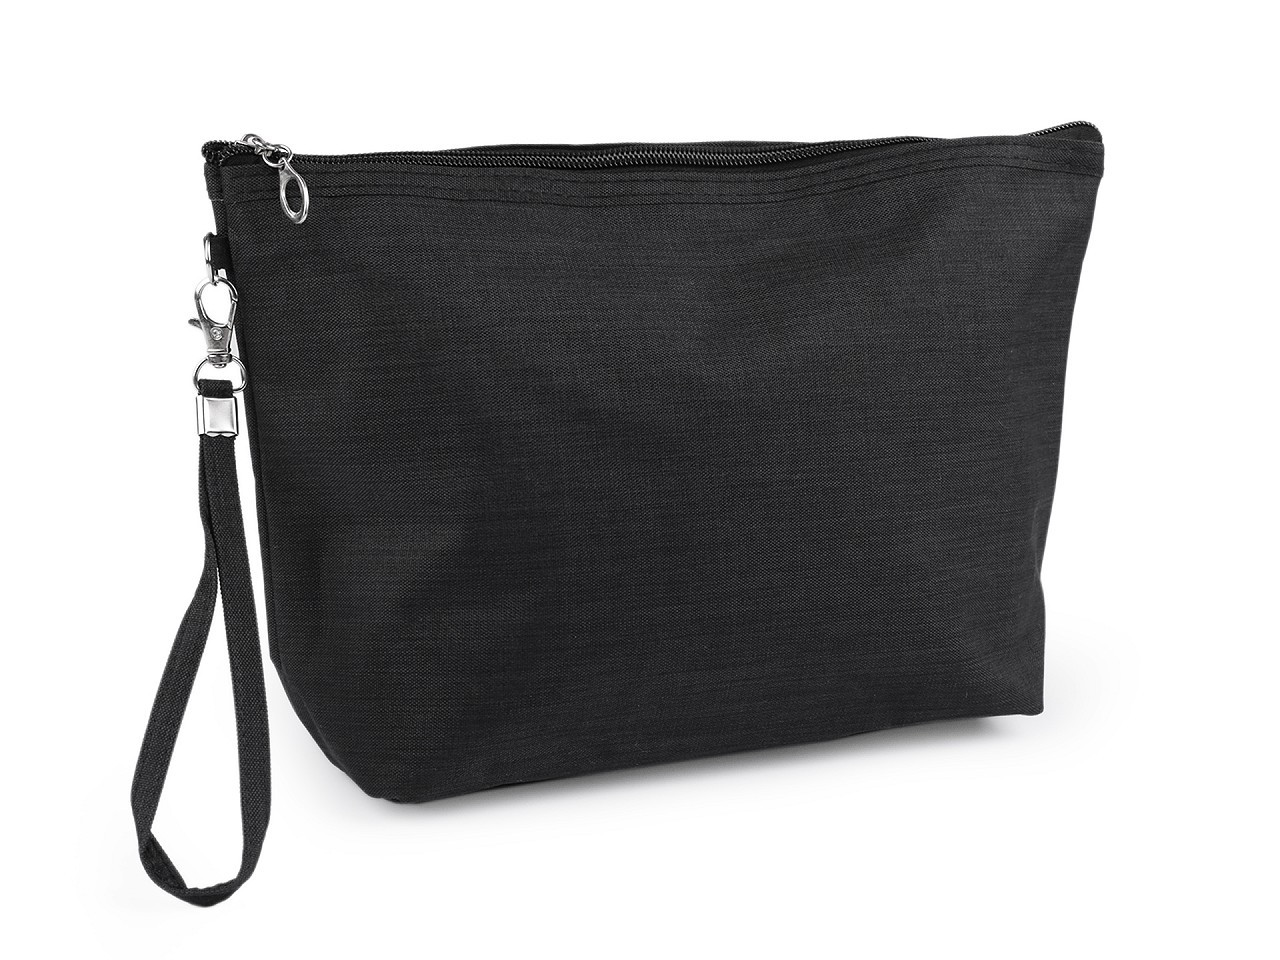 Kosmetická taška / pouzdro textilní 20x30 cm, barva 2 černá